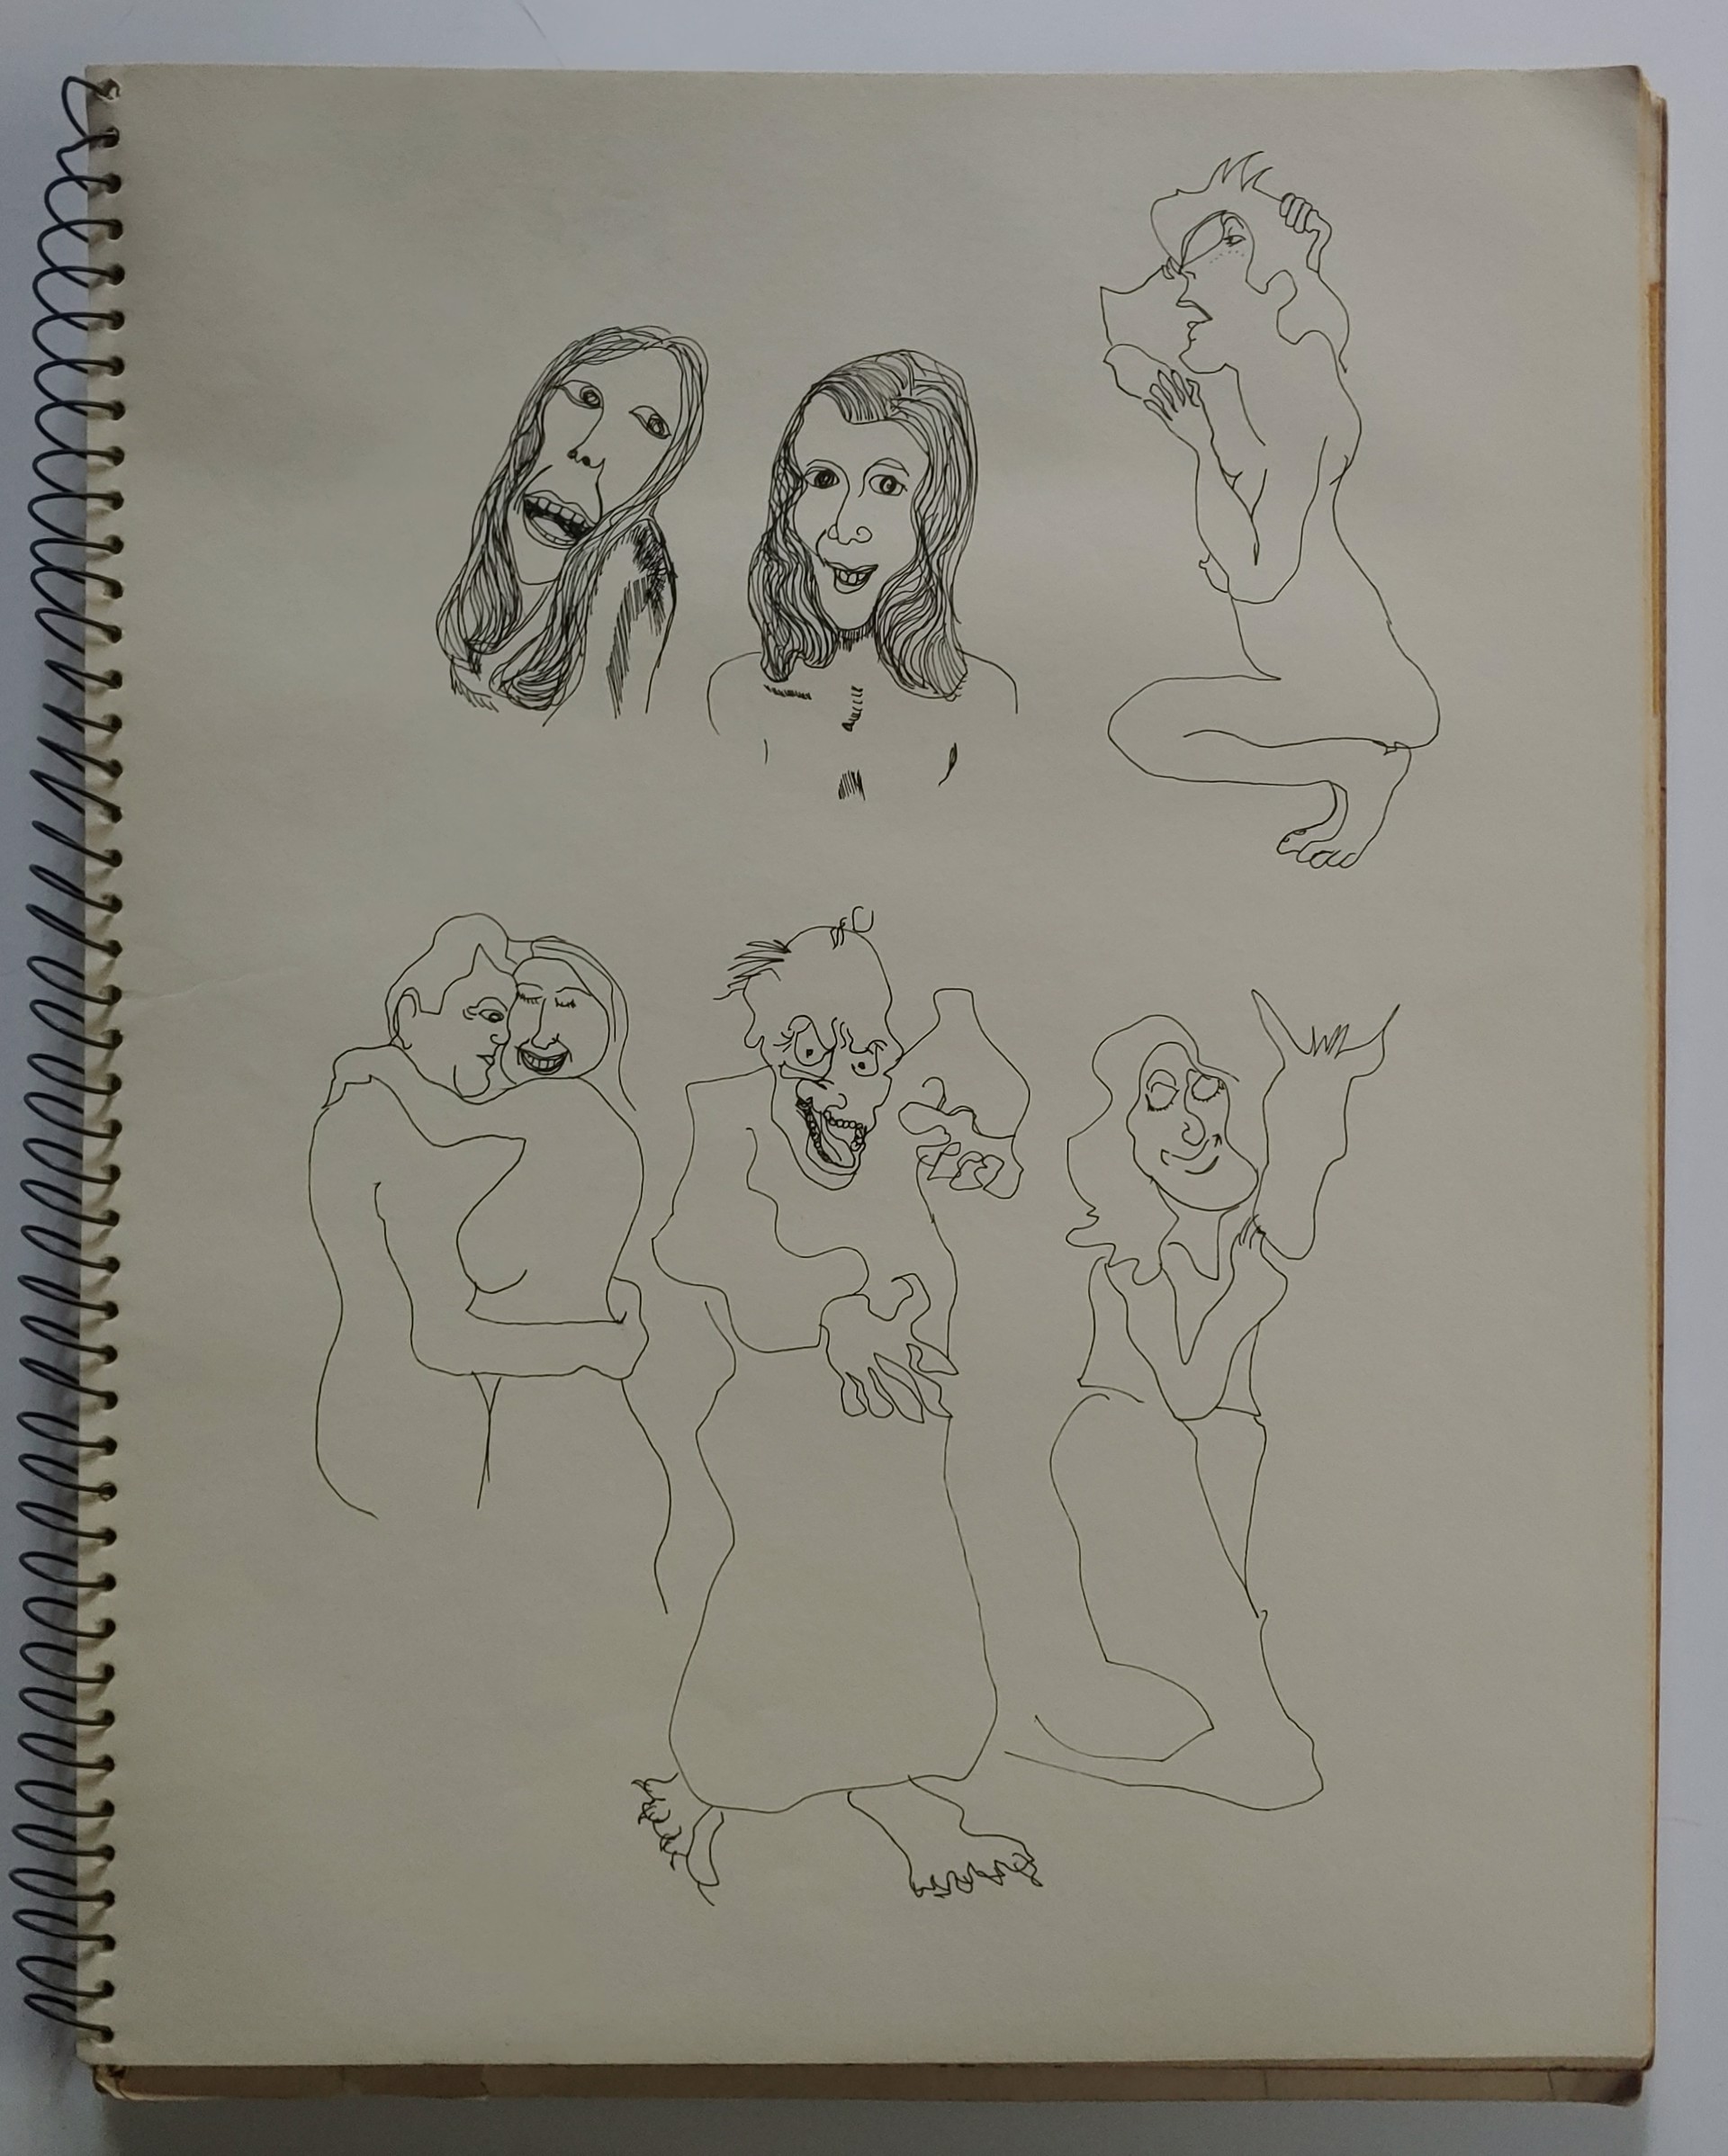 1977 Sketchbook by David Amdur